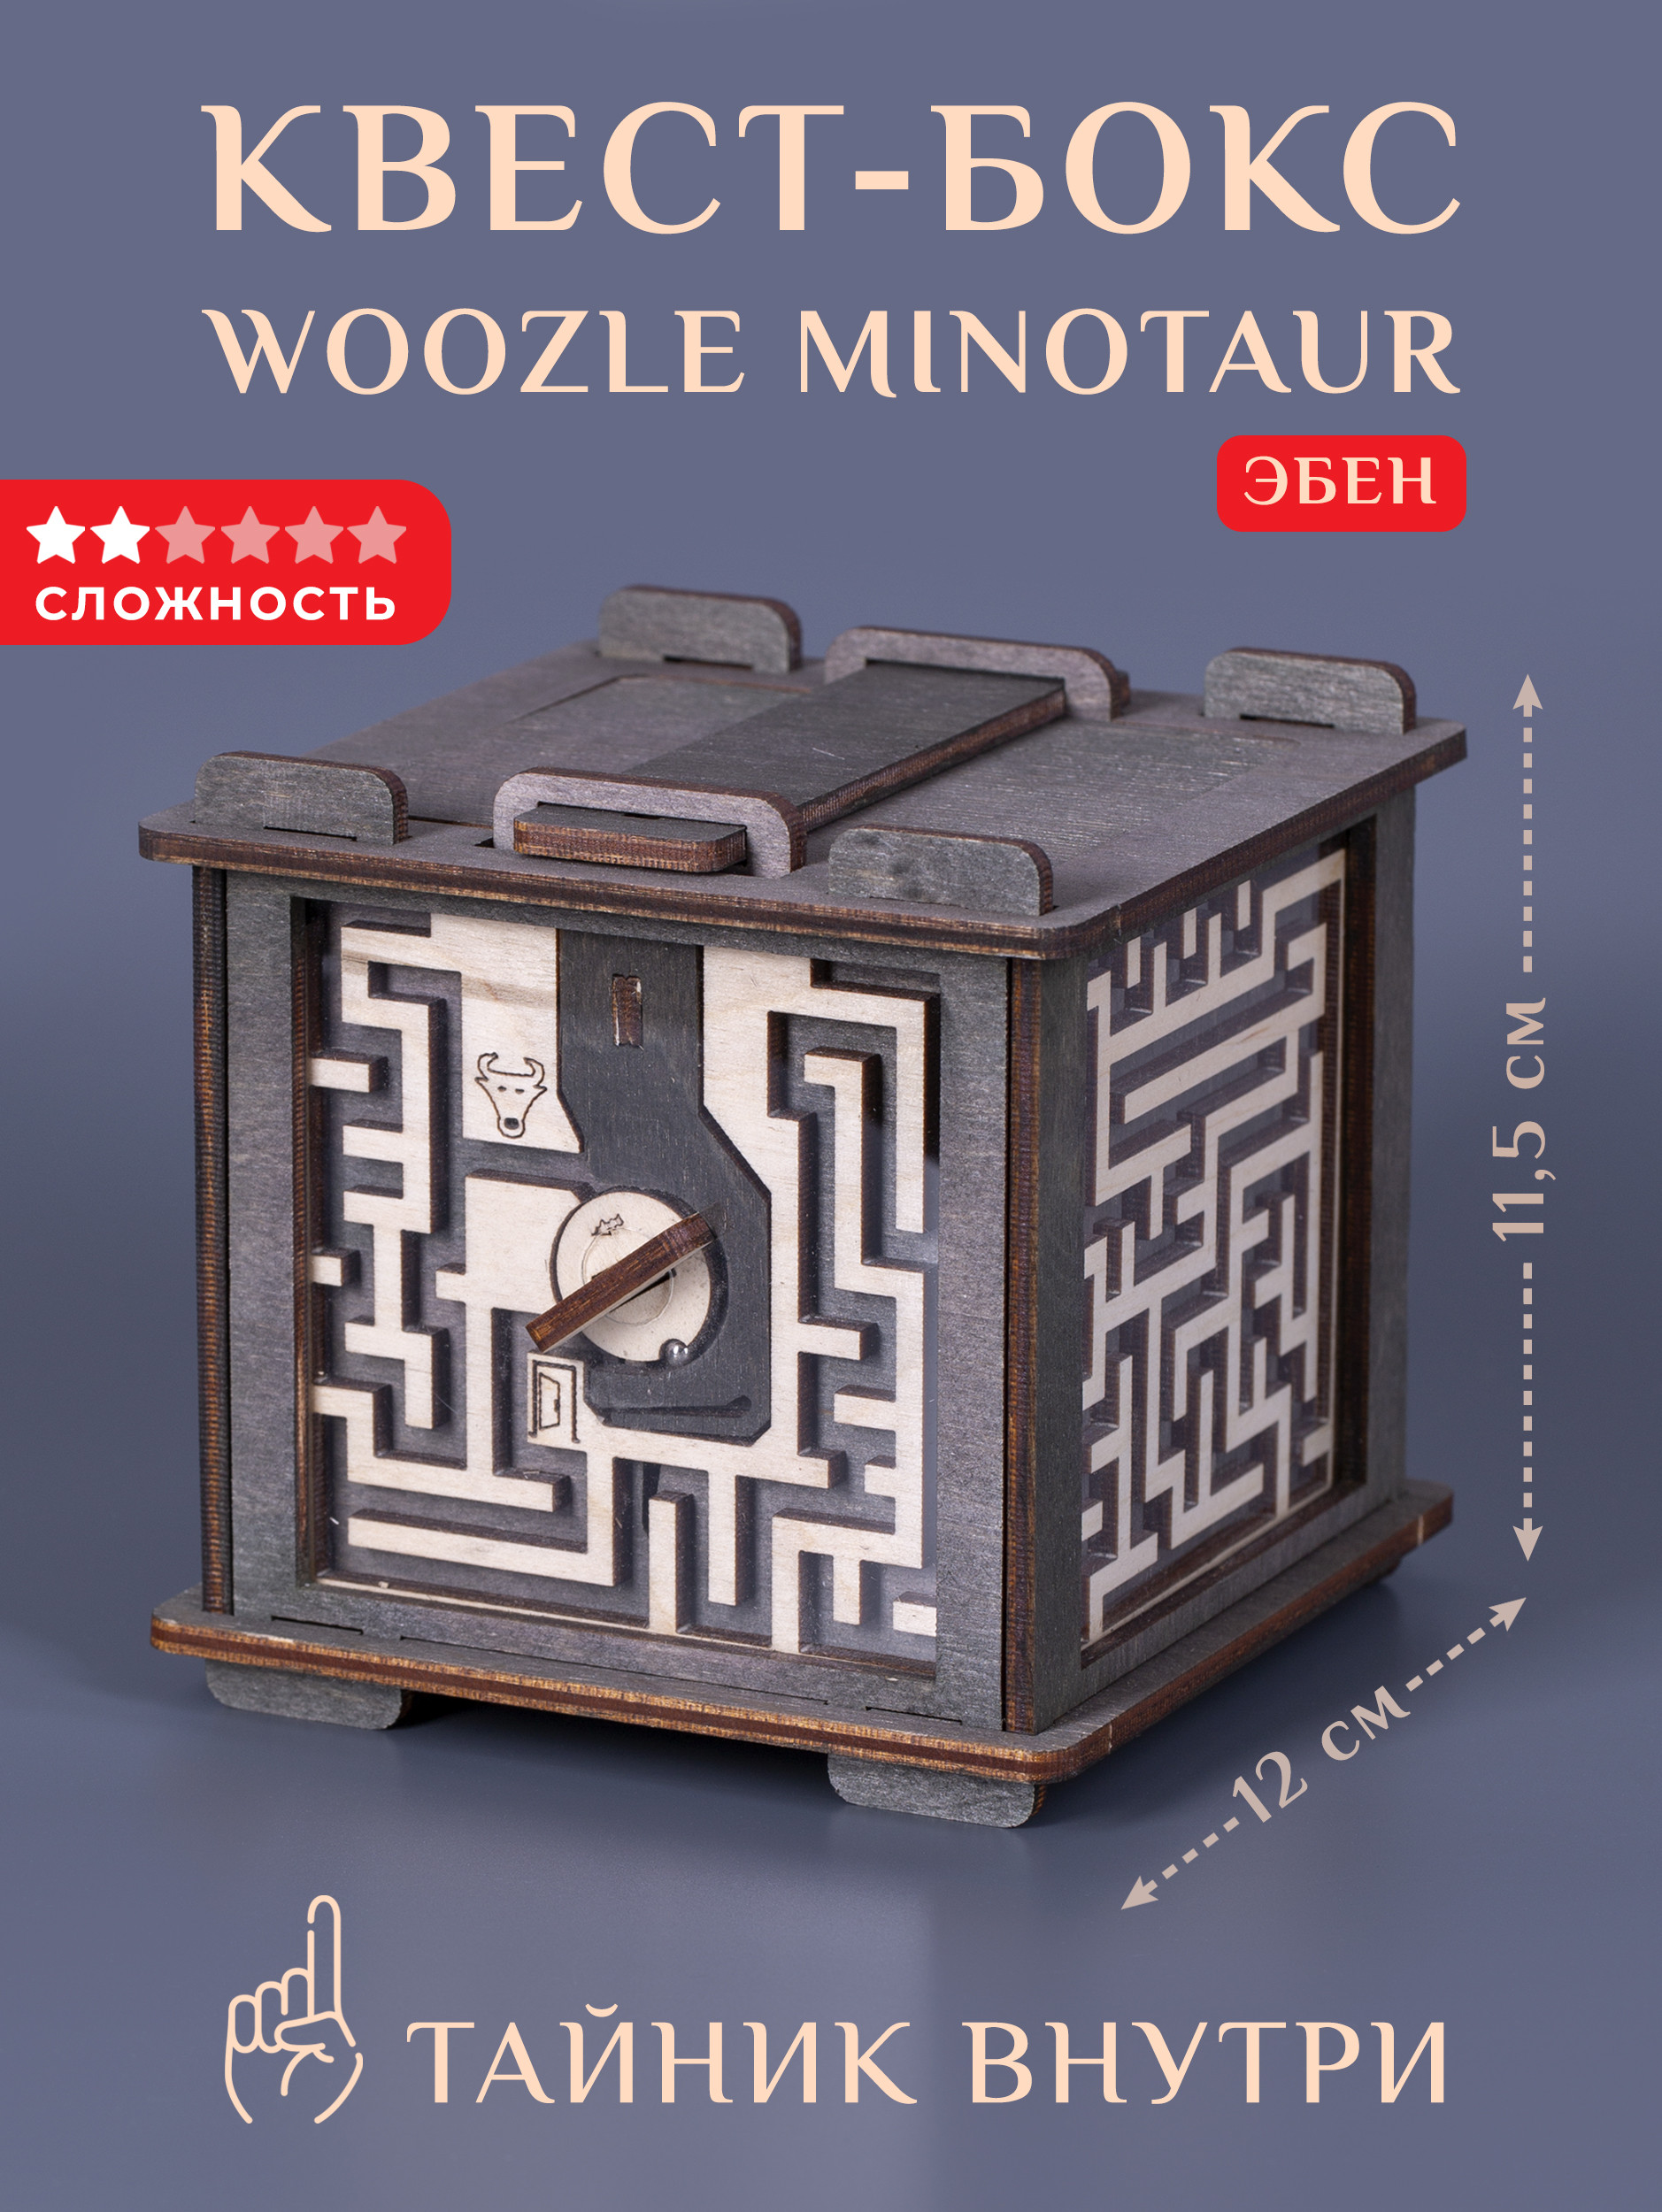 Деревянная квест-шкатулка Woozle лабиринт Minotaur Эбен случай в парке детективный квест головоломка